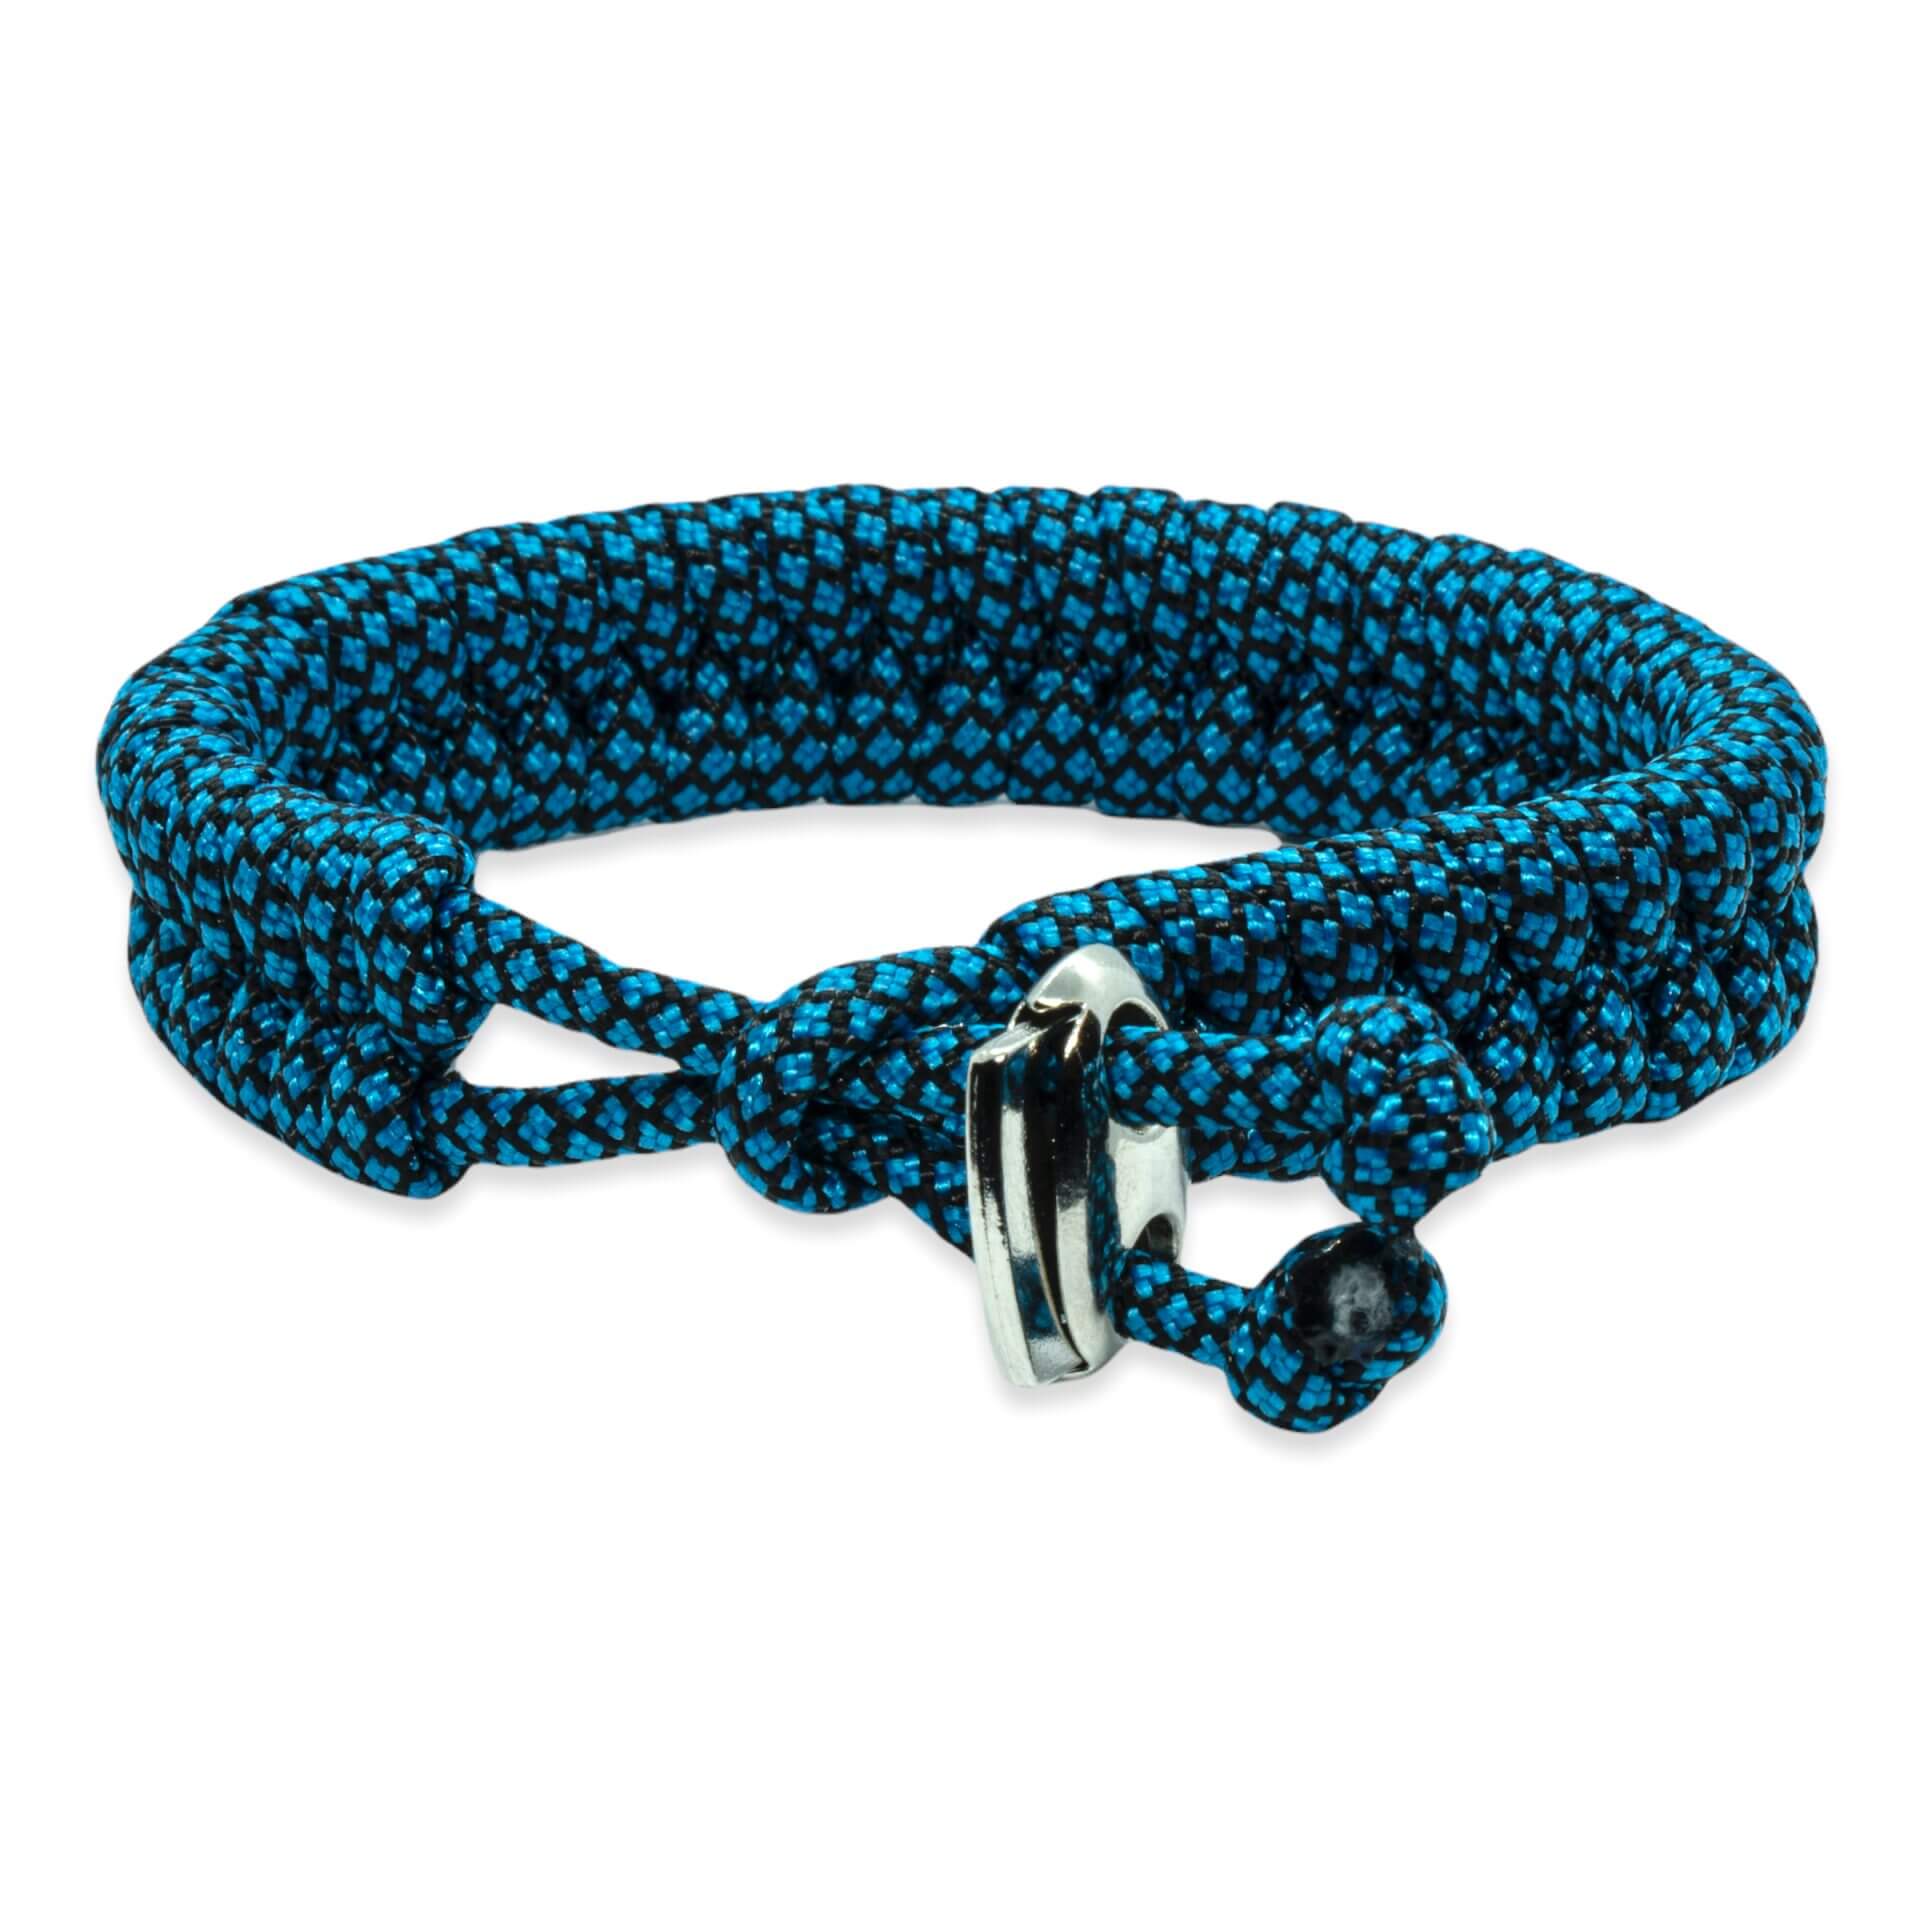 Zweedse staart armband - Blauw zwarte touw kleuren